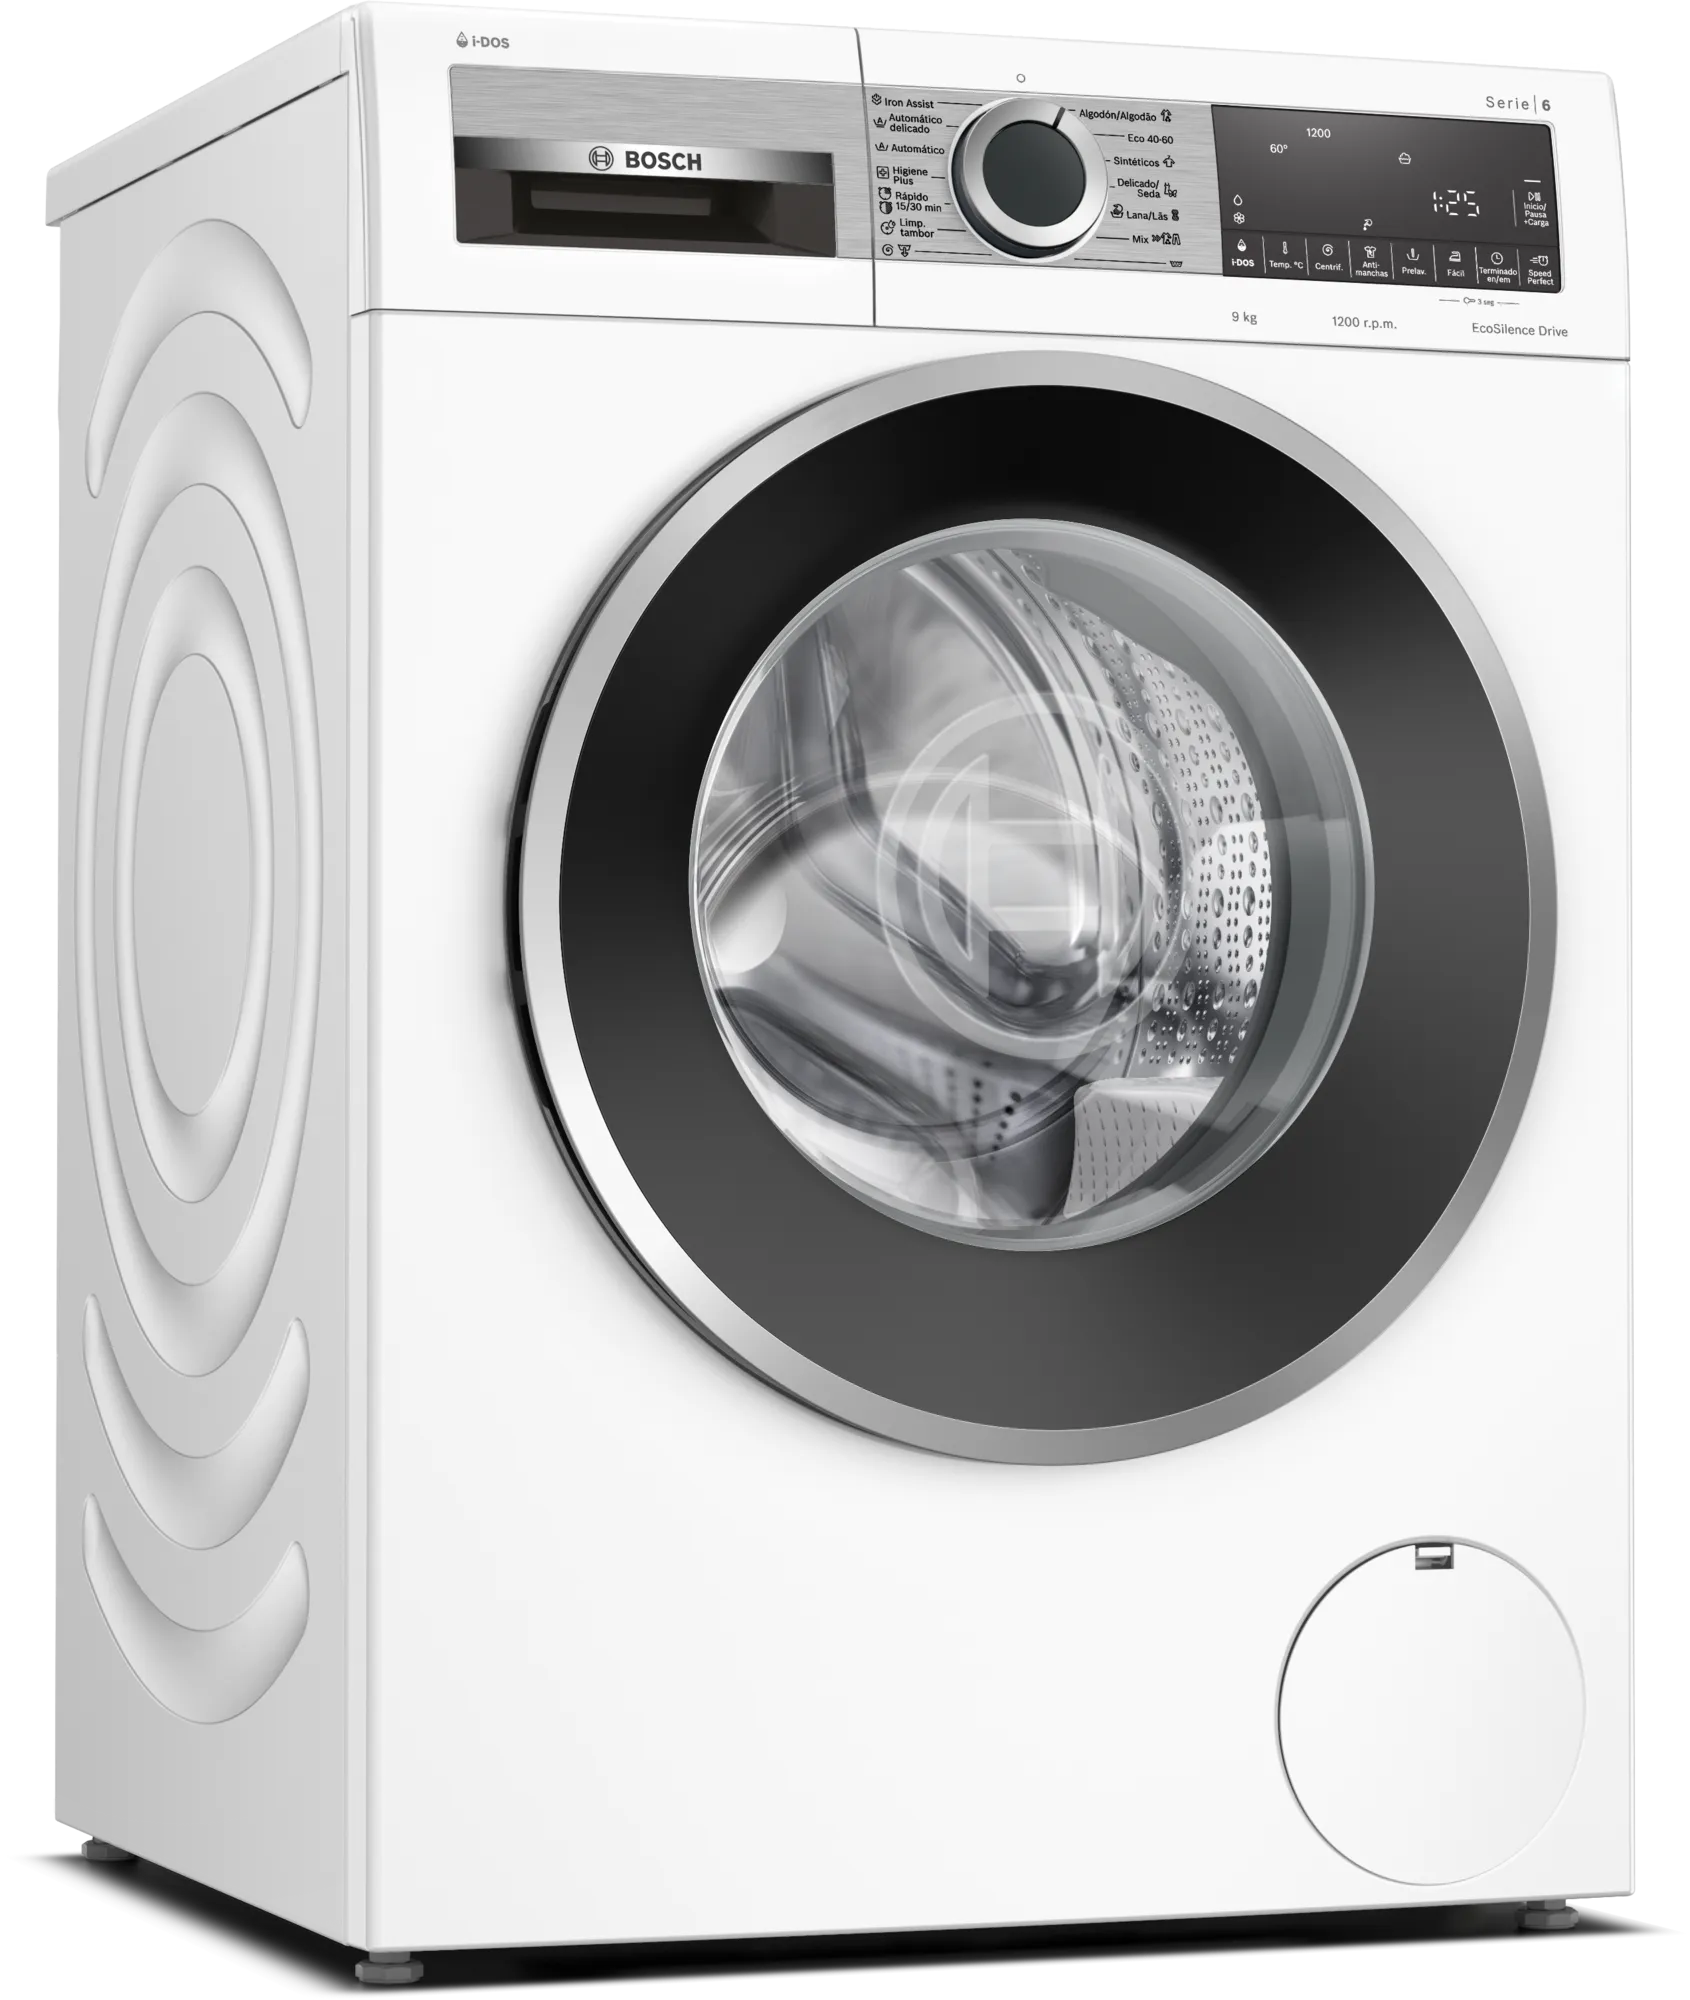 Pasado Escarpado escotilla comprar lavadora Bosch 9kg 1200rpm buen precio I-DOS | eduardsegui